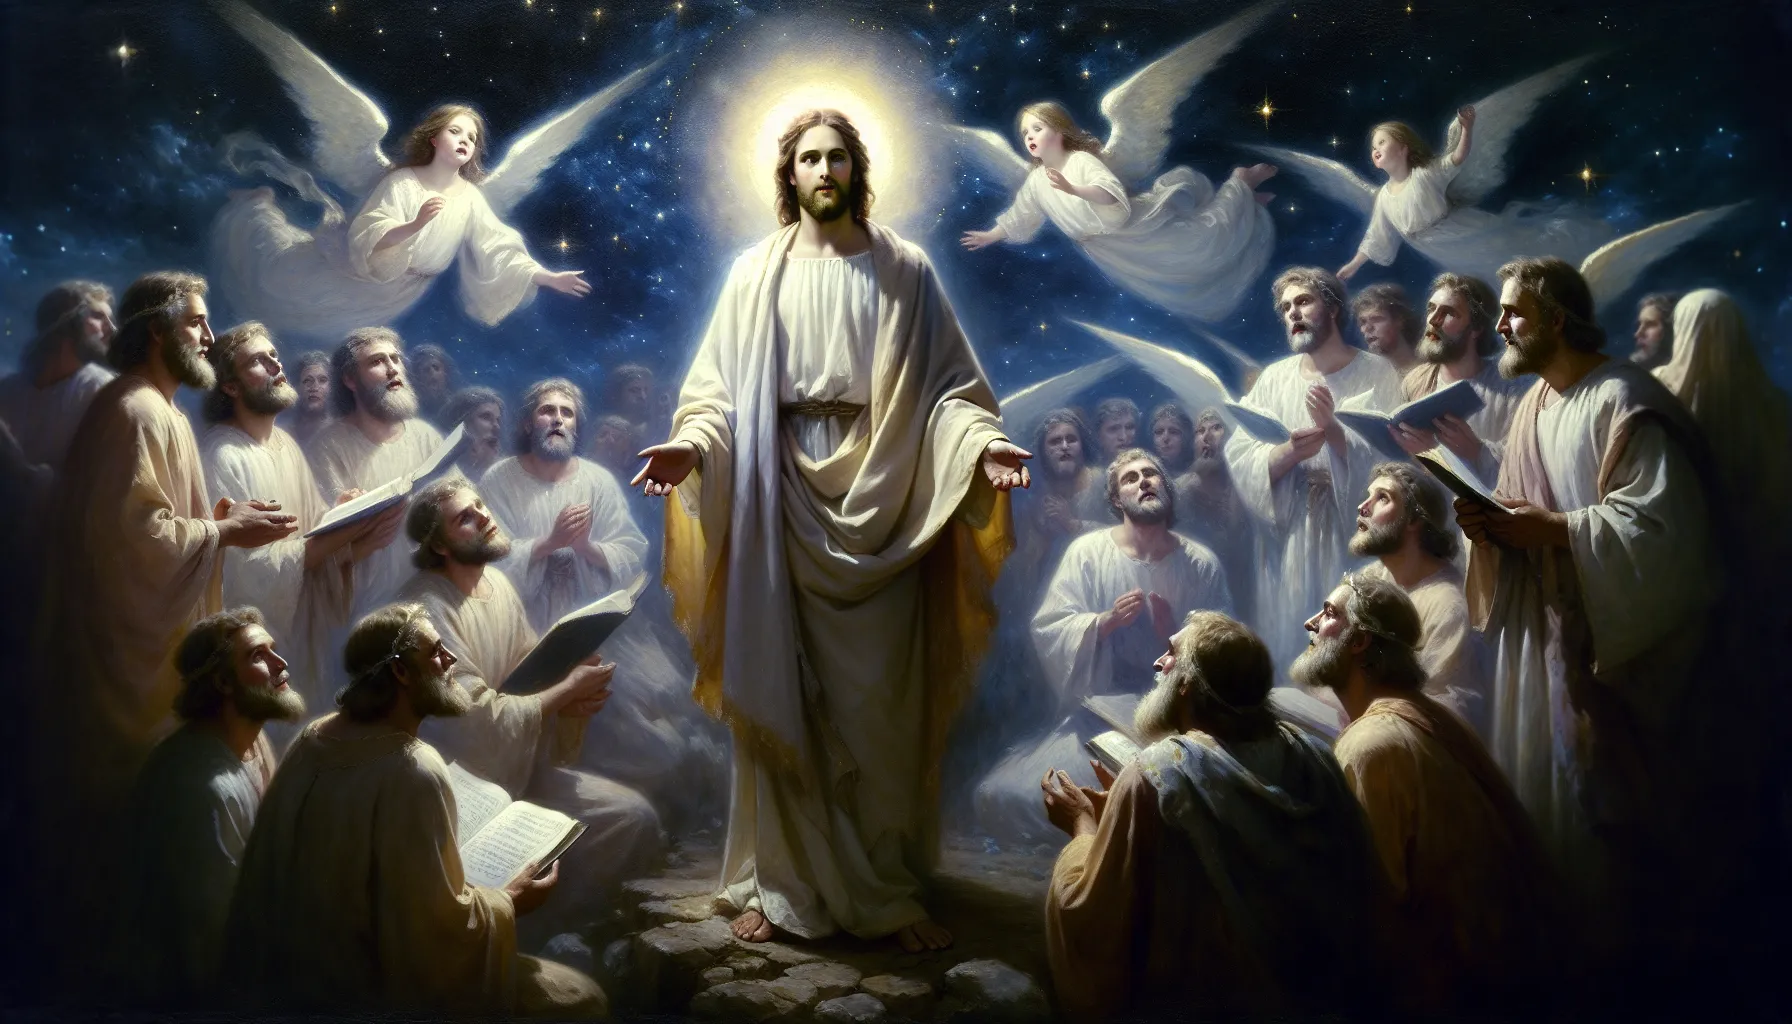 Representación artística de la Encarnación de Cristo según la Biblia